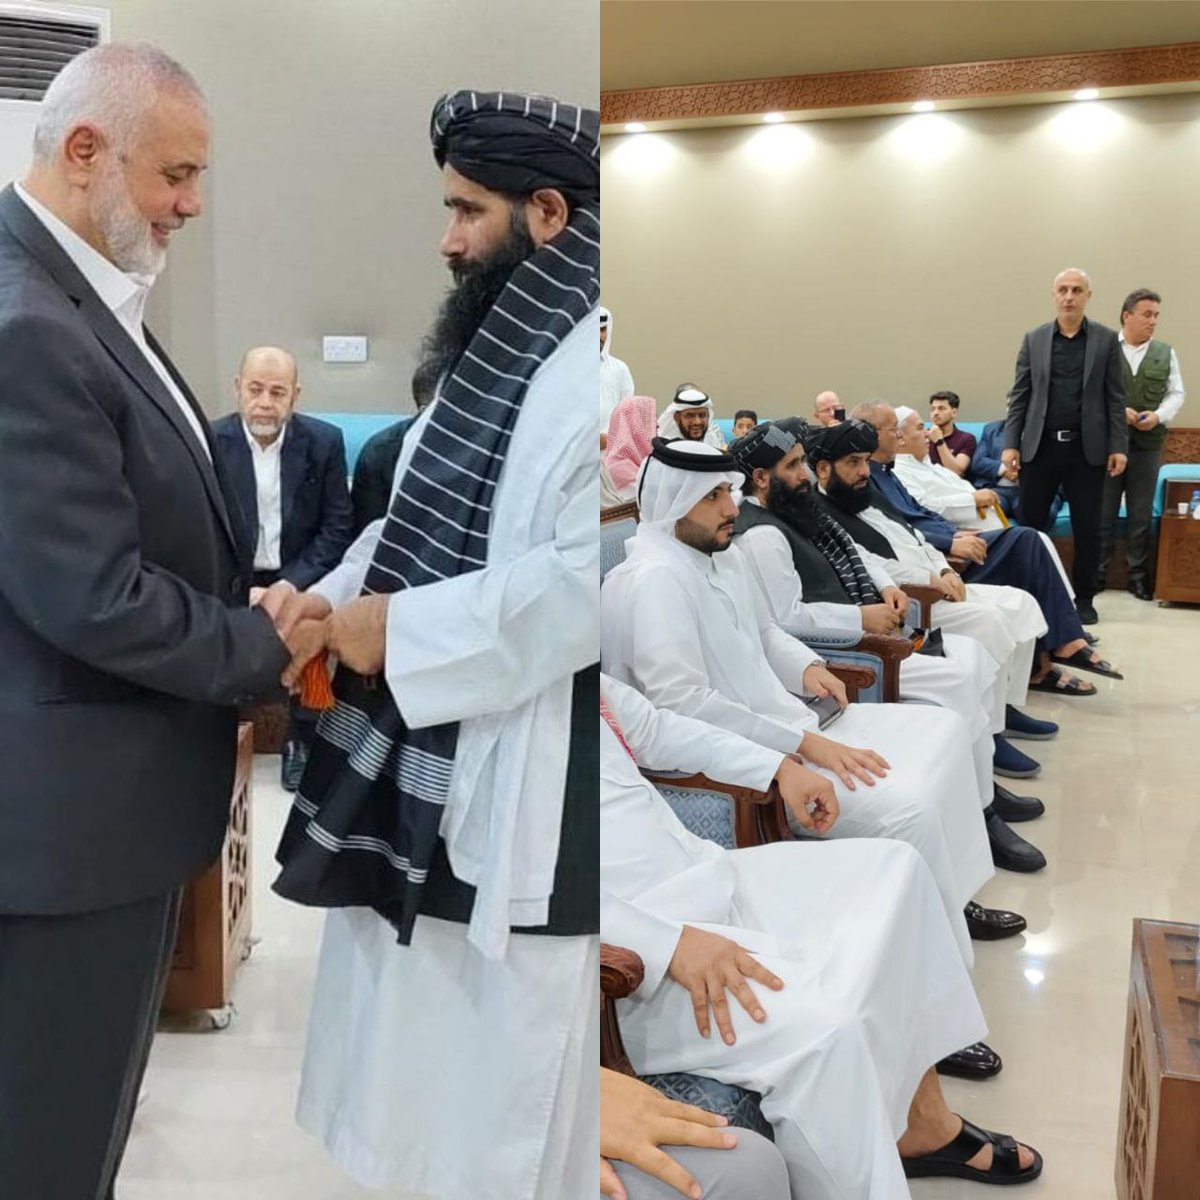 İsmail Haniye’nin aile üyelerinin cenaze töreninde üst düzey Taliban yetkilileri katıldı